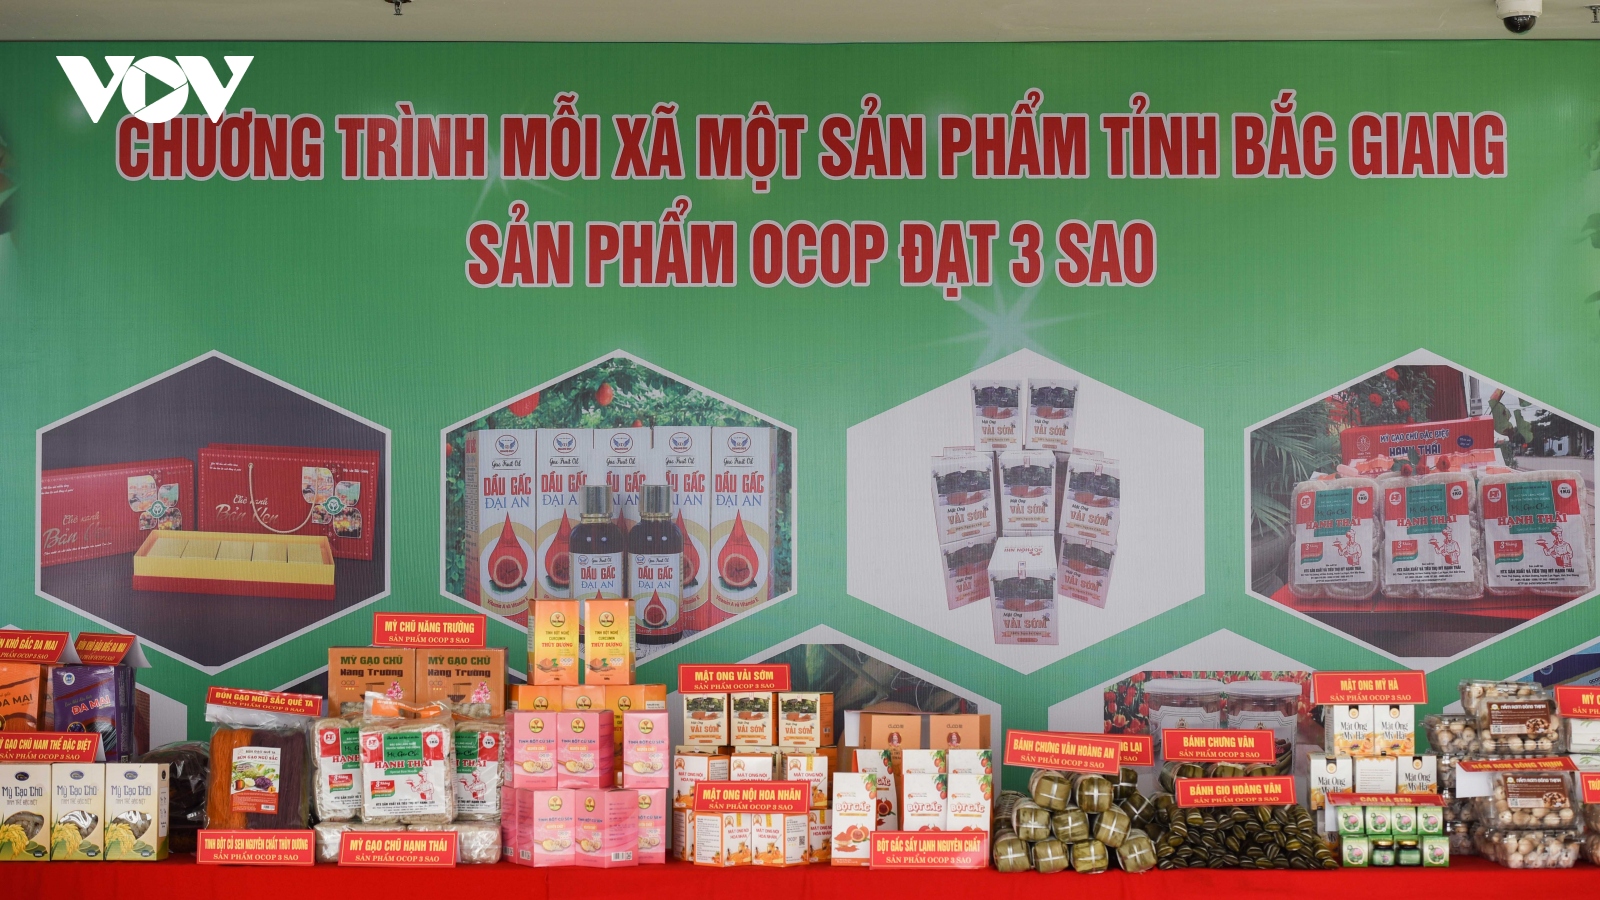 Động lực phát triển kinh tế nông thôn từ sản phẩm OCOP ở Bắc Giang